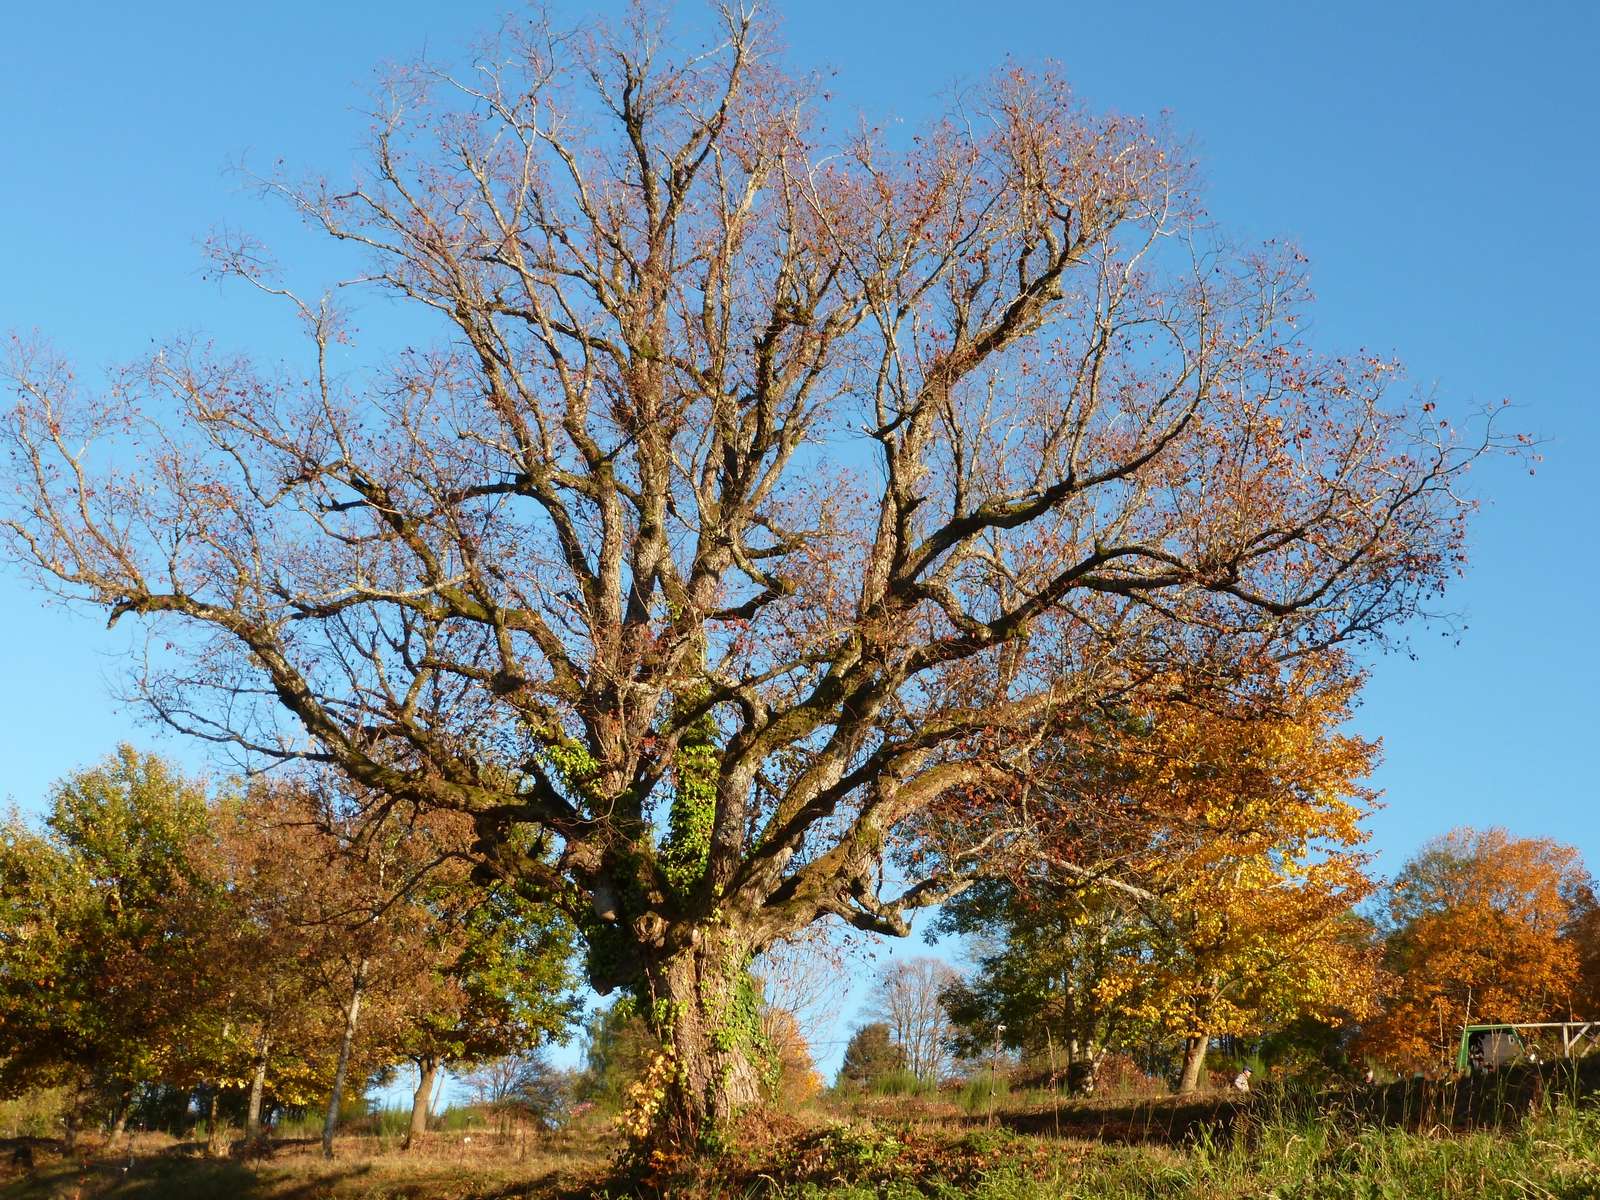 An oak tree in Solbach